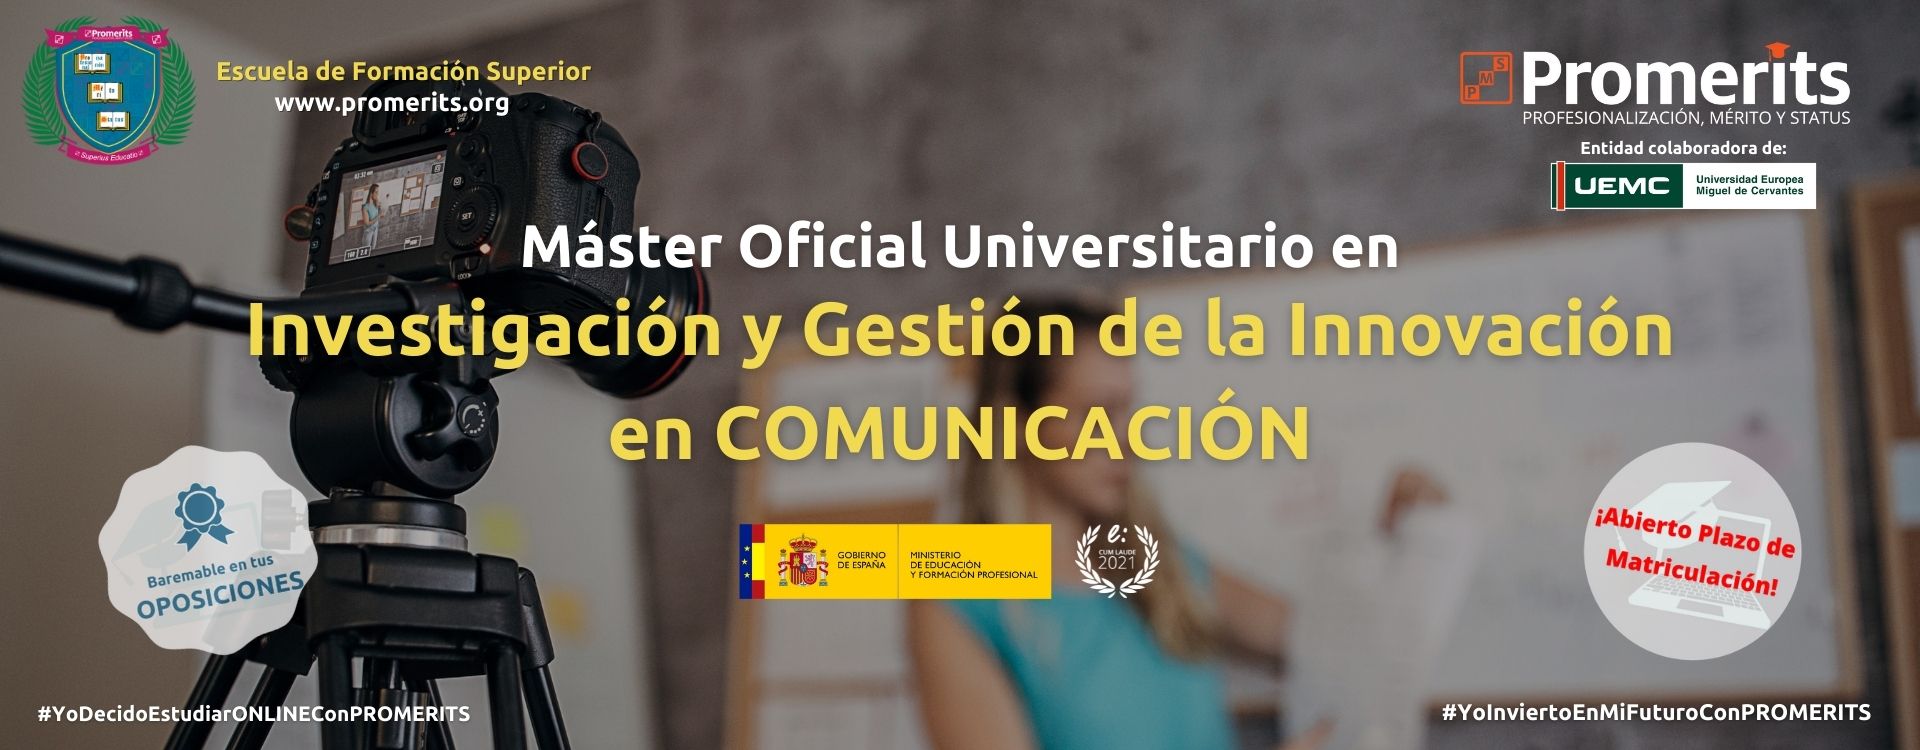 Máster Oficial Universitario en Investigación y Gestión de la Innovación en Comunicación